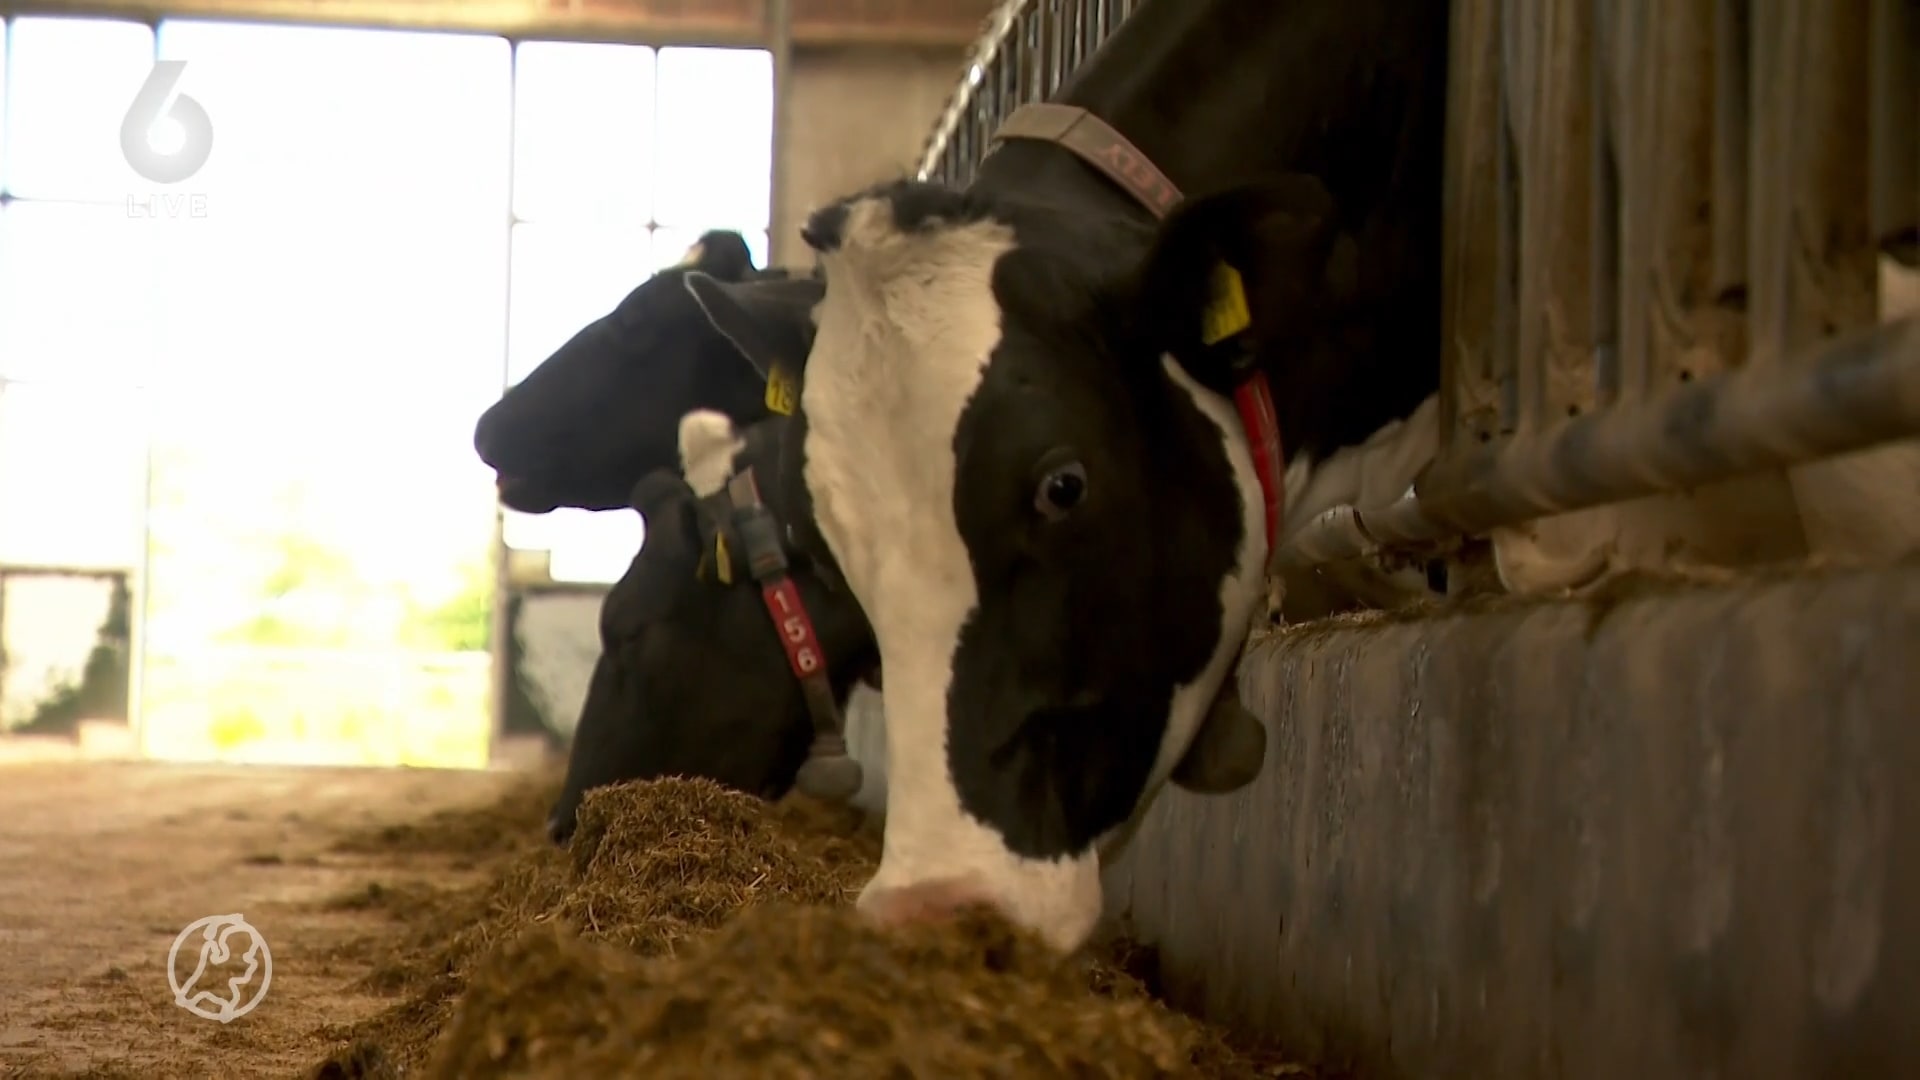 Veehouder Reijer breidt niet uit met koeien, maar met eigen mini-melkfabriek